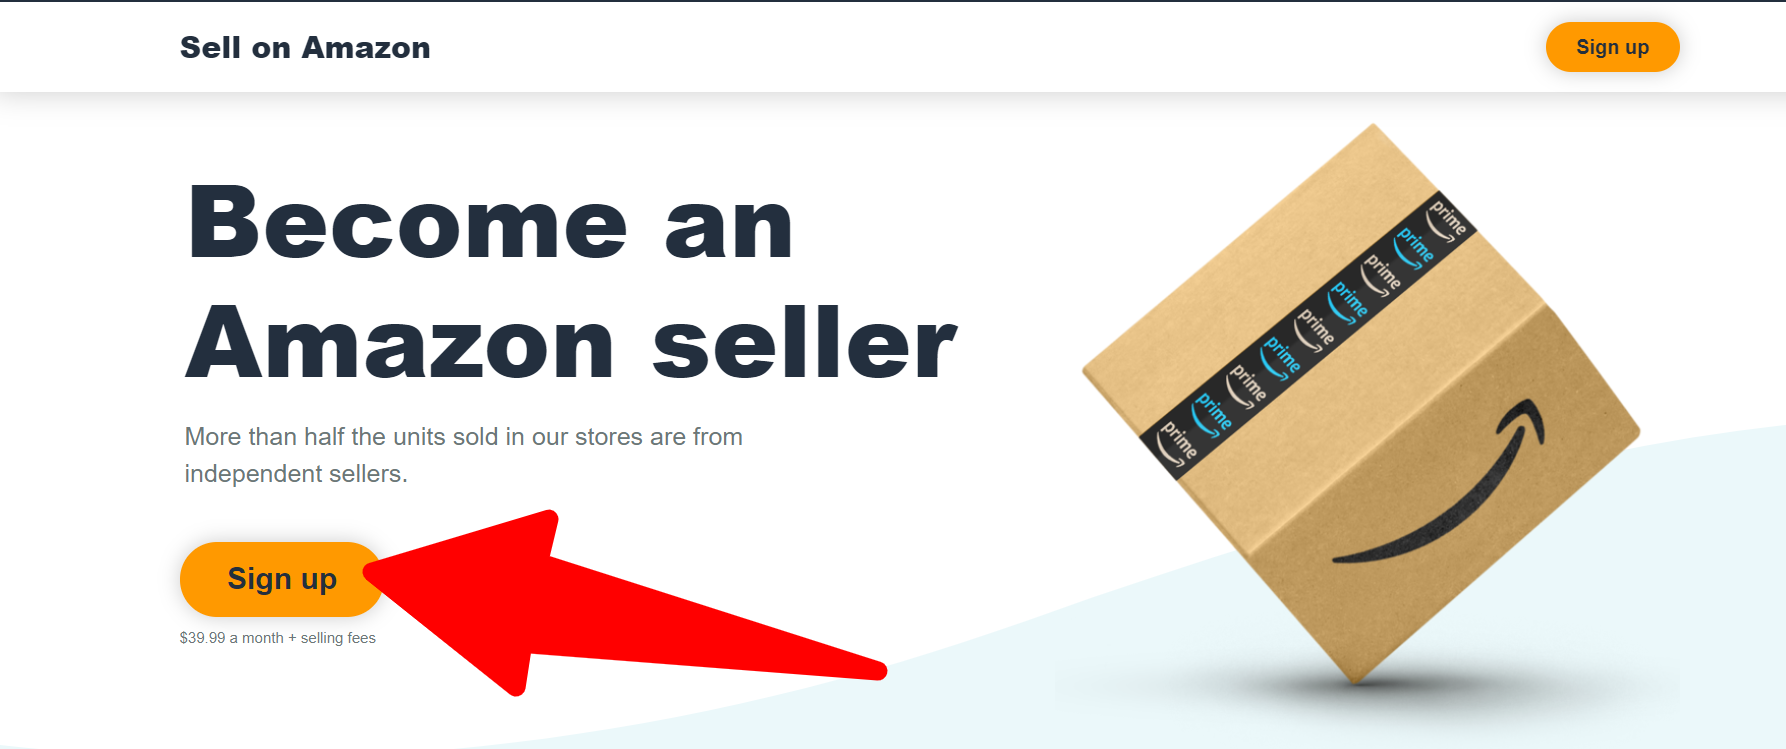 Amazon_ Sell